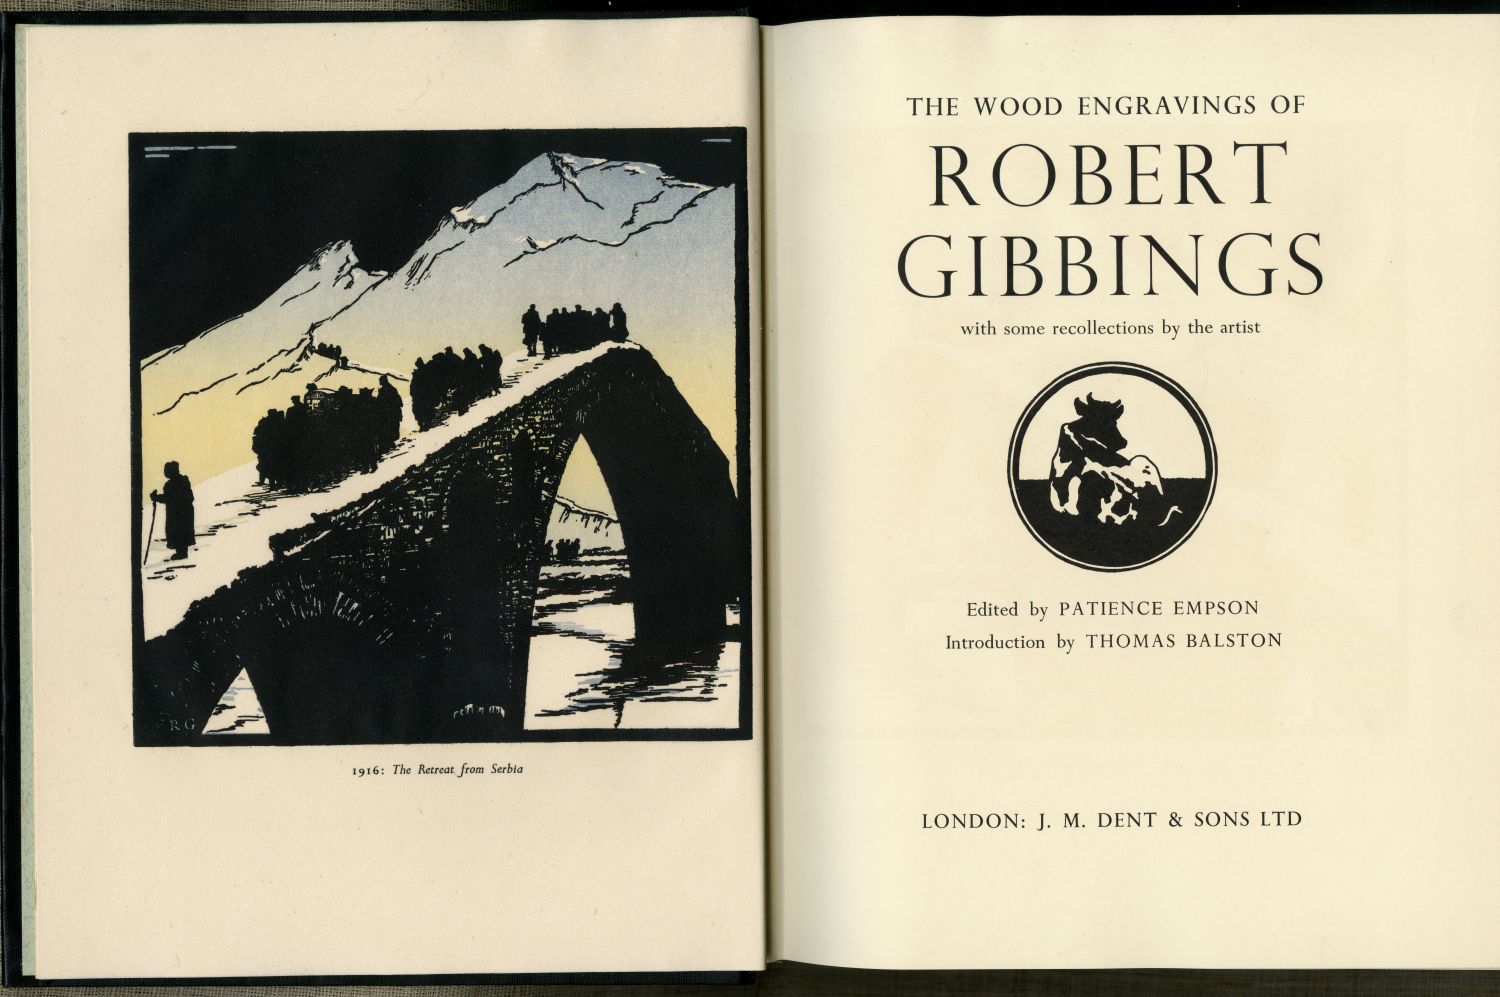 『ロバート・ギビングスの木版画』（1959年、J.M.DENT & SONS）口絵と扉